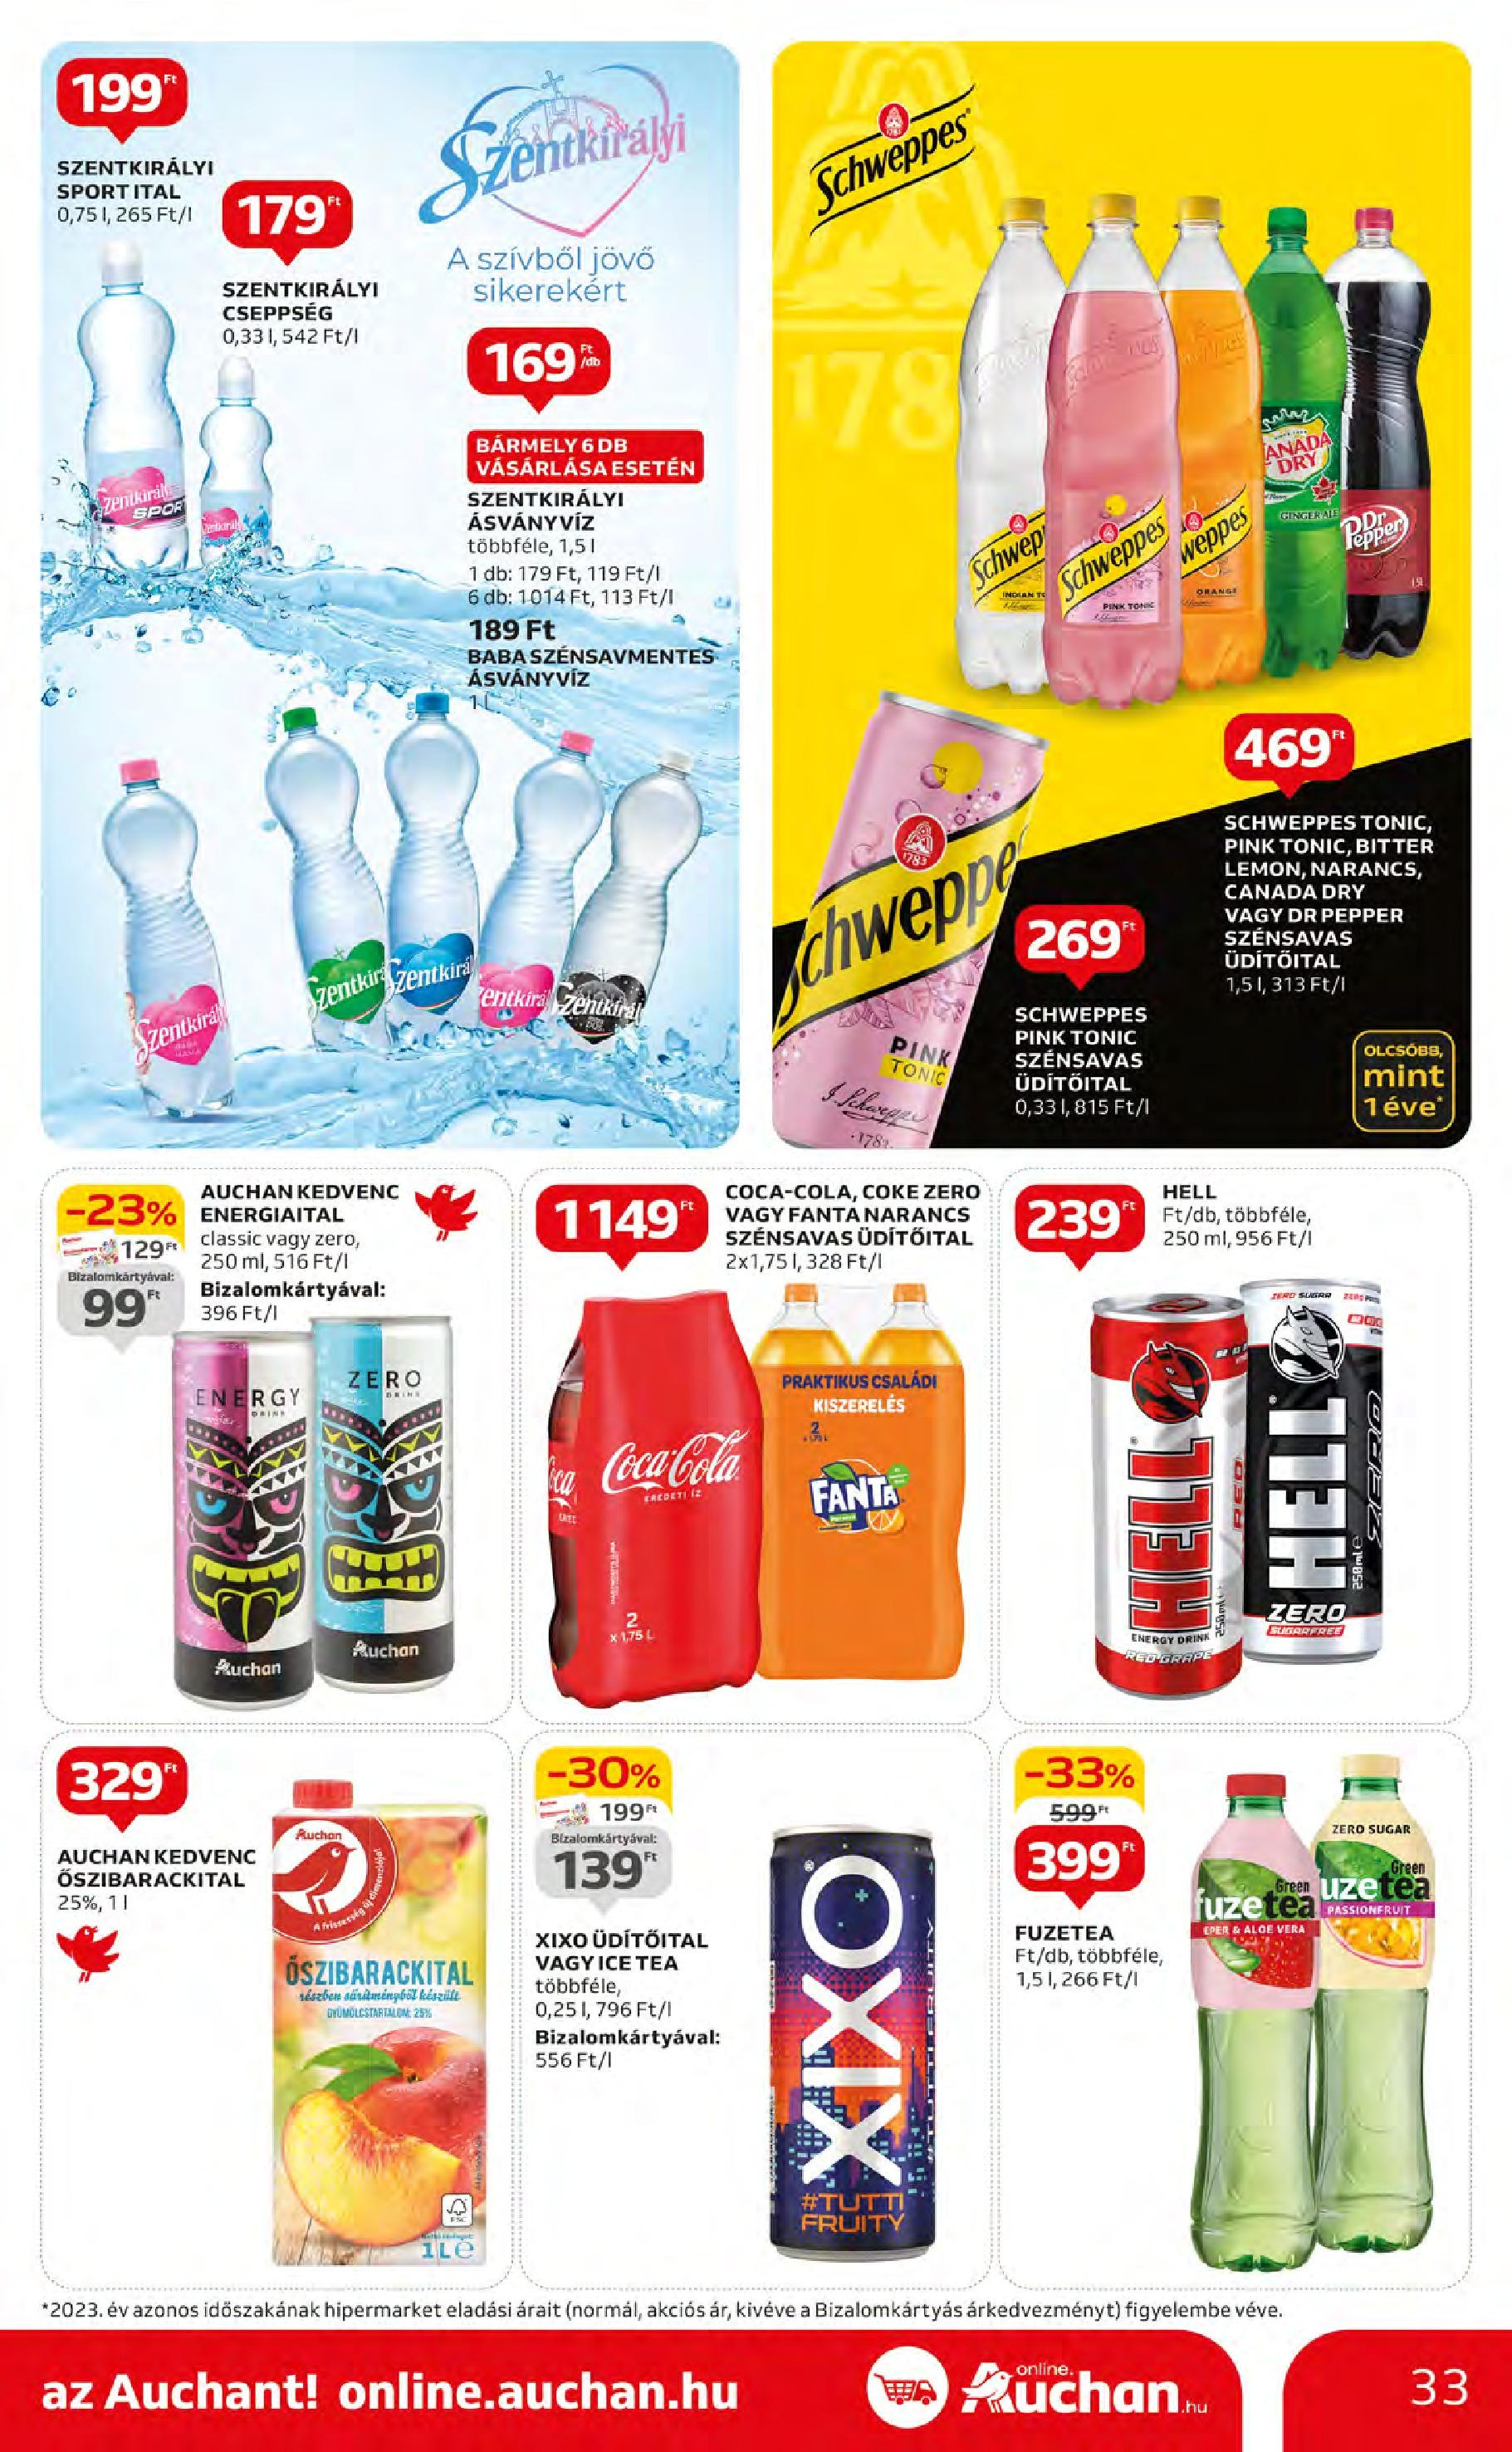 Auchan  Akciós újság - 2024.05.09. -tól/töl > akció, szórólap 🛍️ | Oldal: 33 | Termékek: Energiaital, Aloe vera, Narancs, Eper